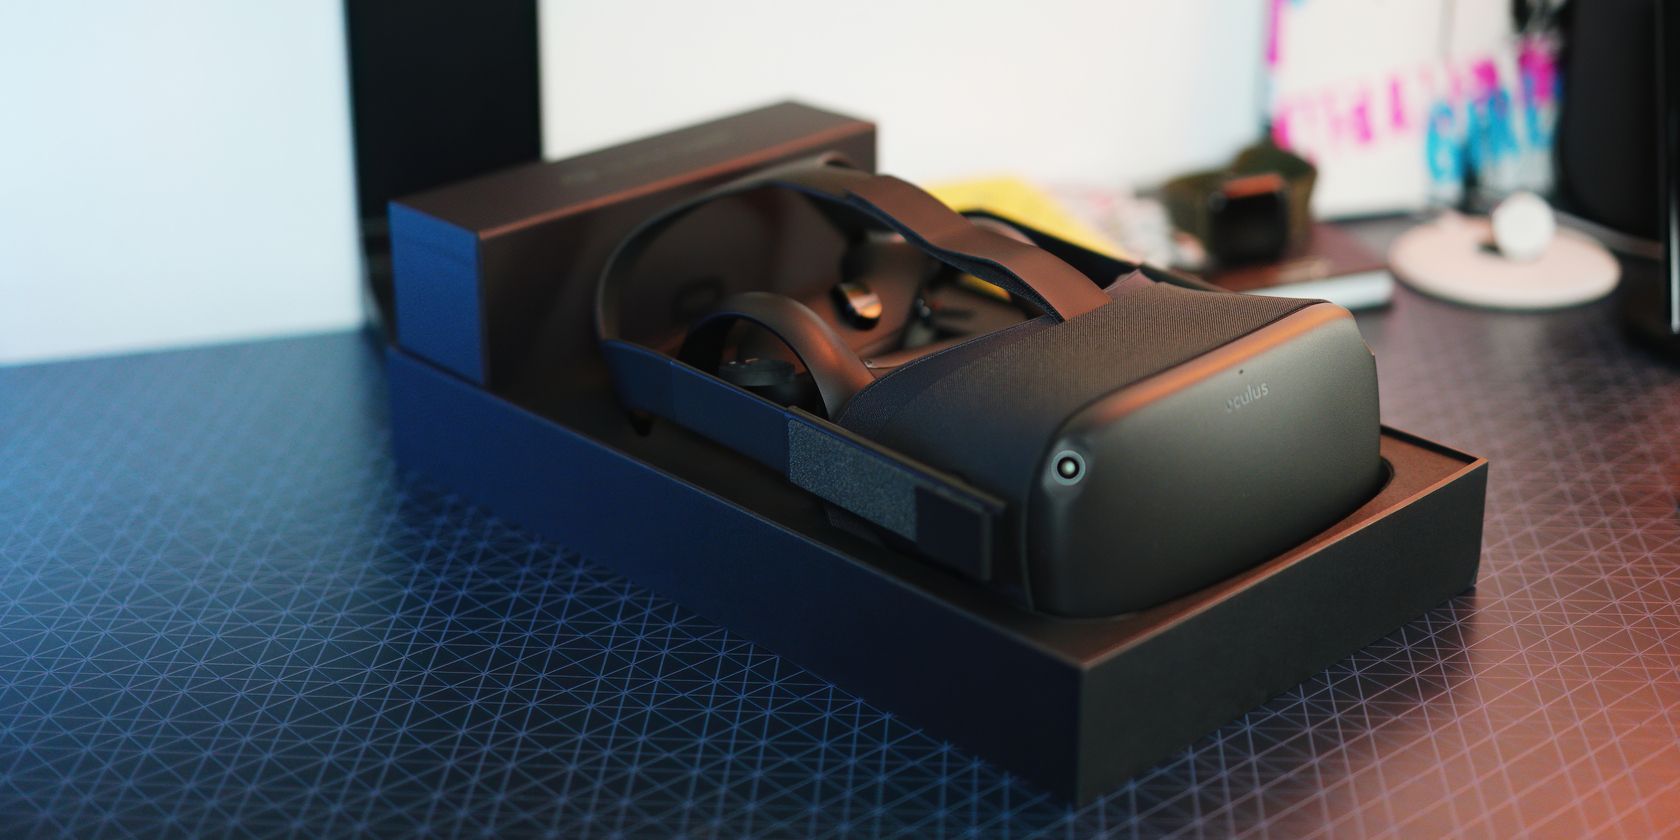 Oculus Quest in open box